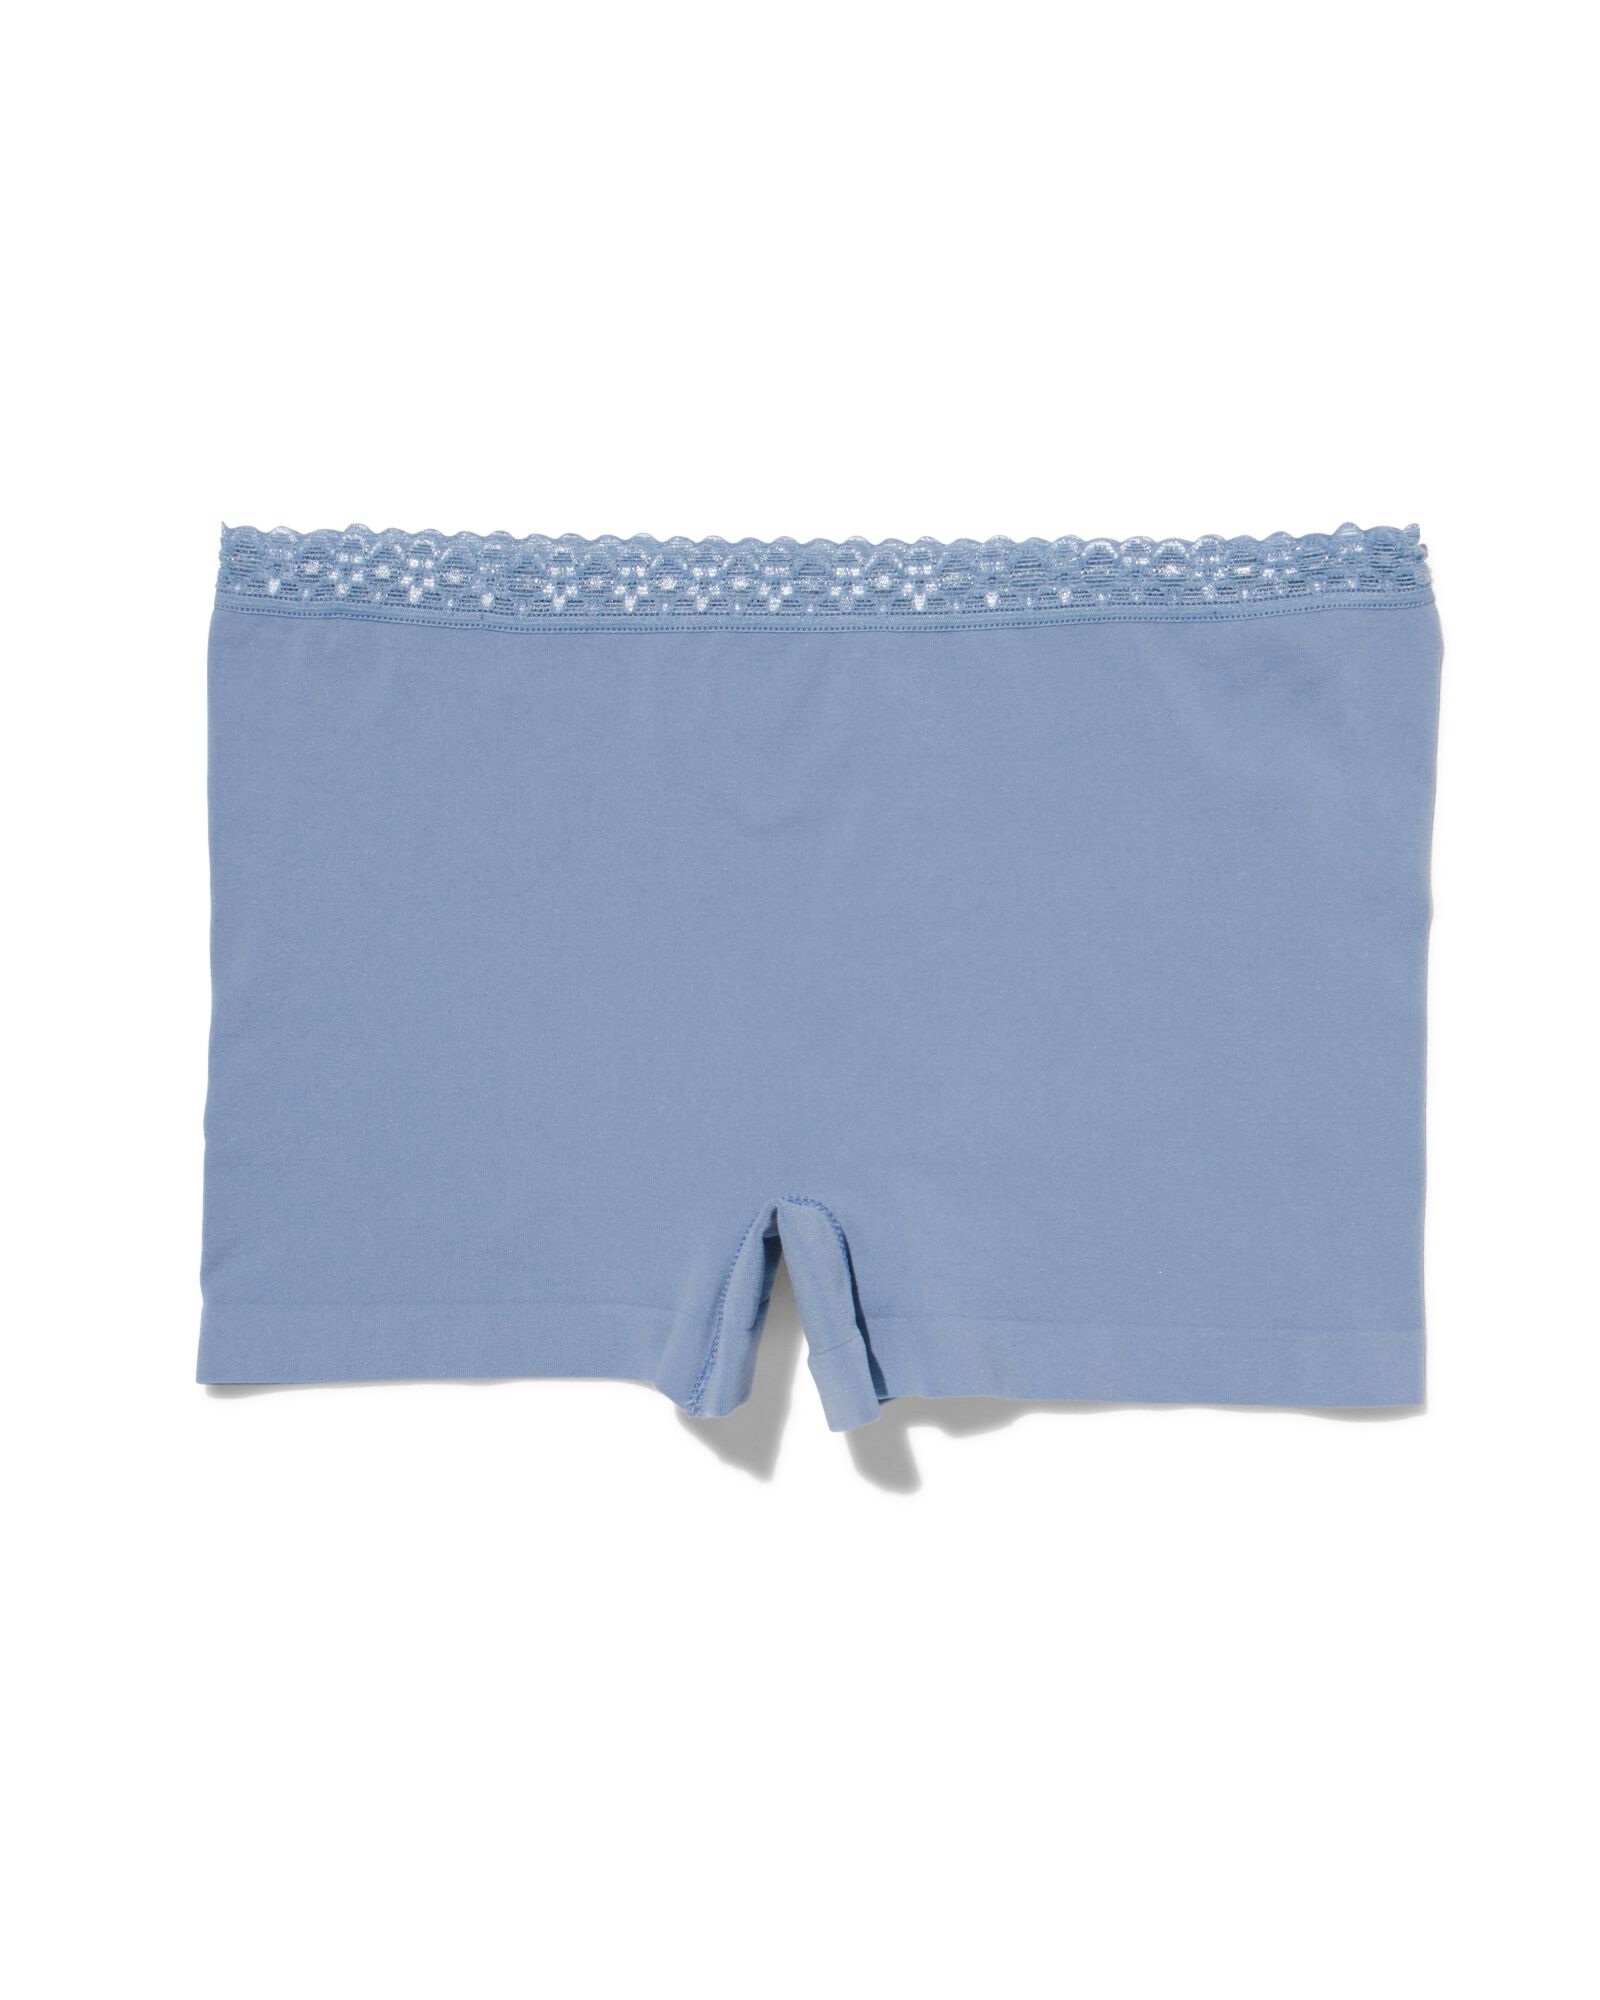 Damen-Shorts, nahtlos, mit Spitze blau blau - 1000031558 - HEMA